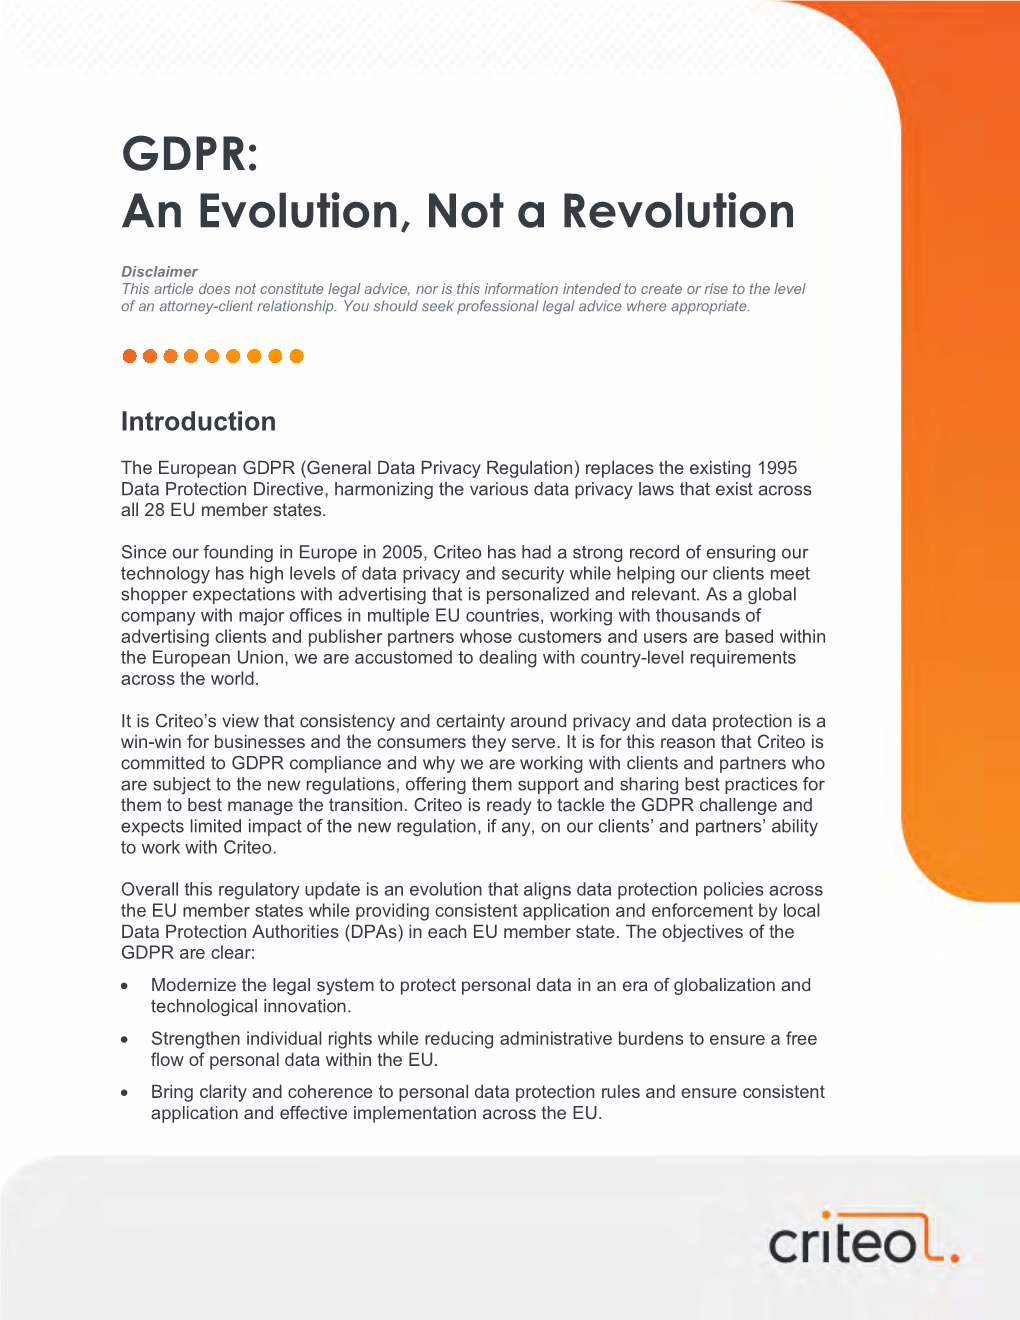 GDPR: an Evolution, Not a Revolution